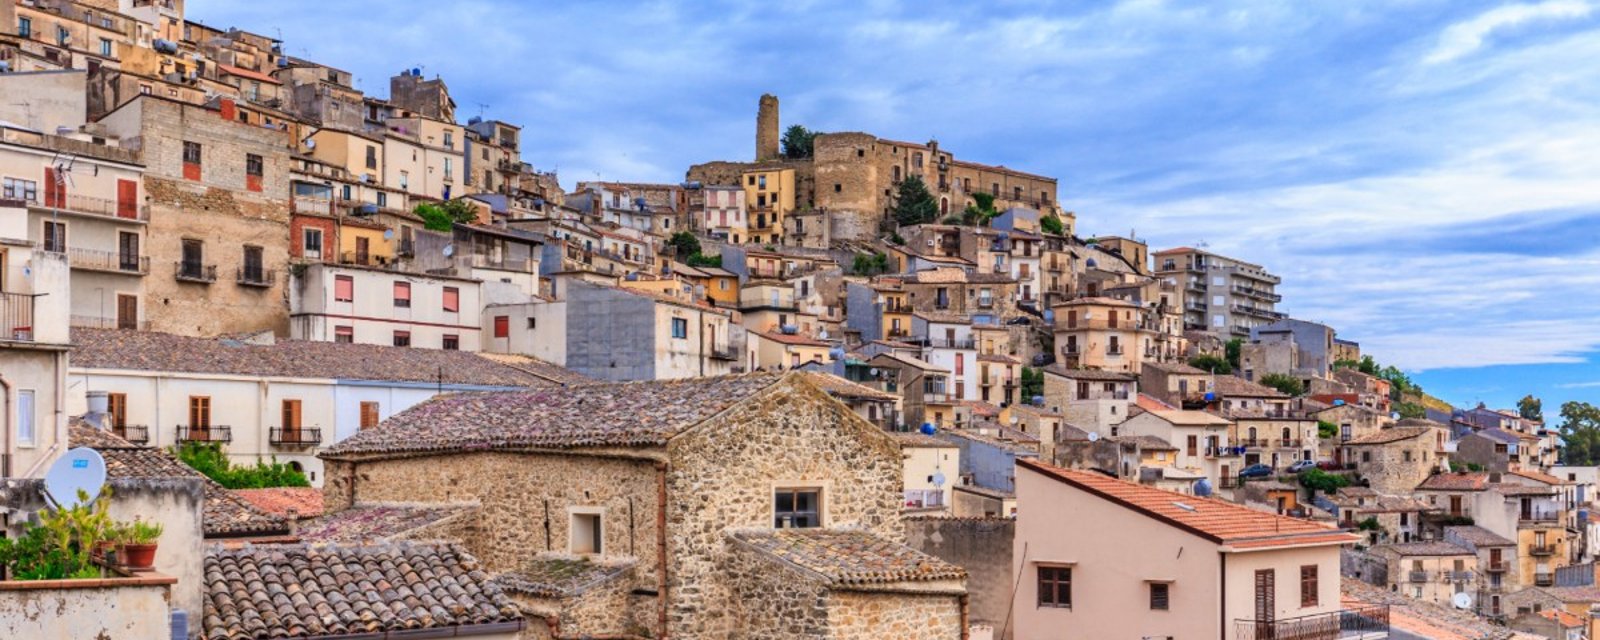 Un village de Sicile offre des maisons gratuites aux nouveaux arrivants